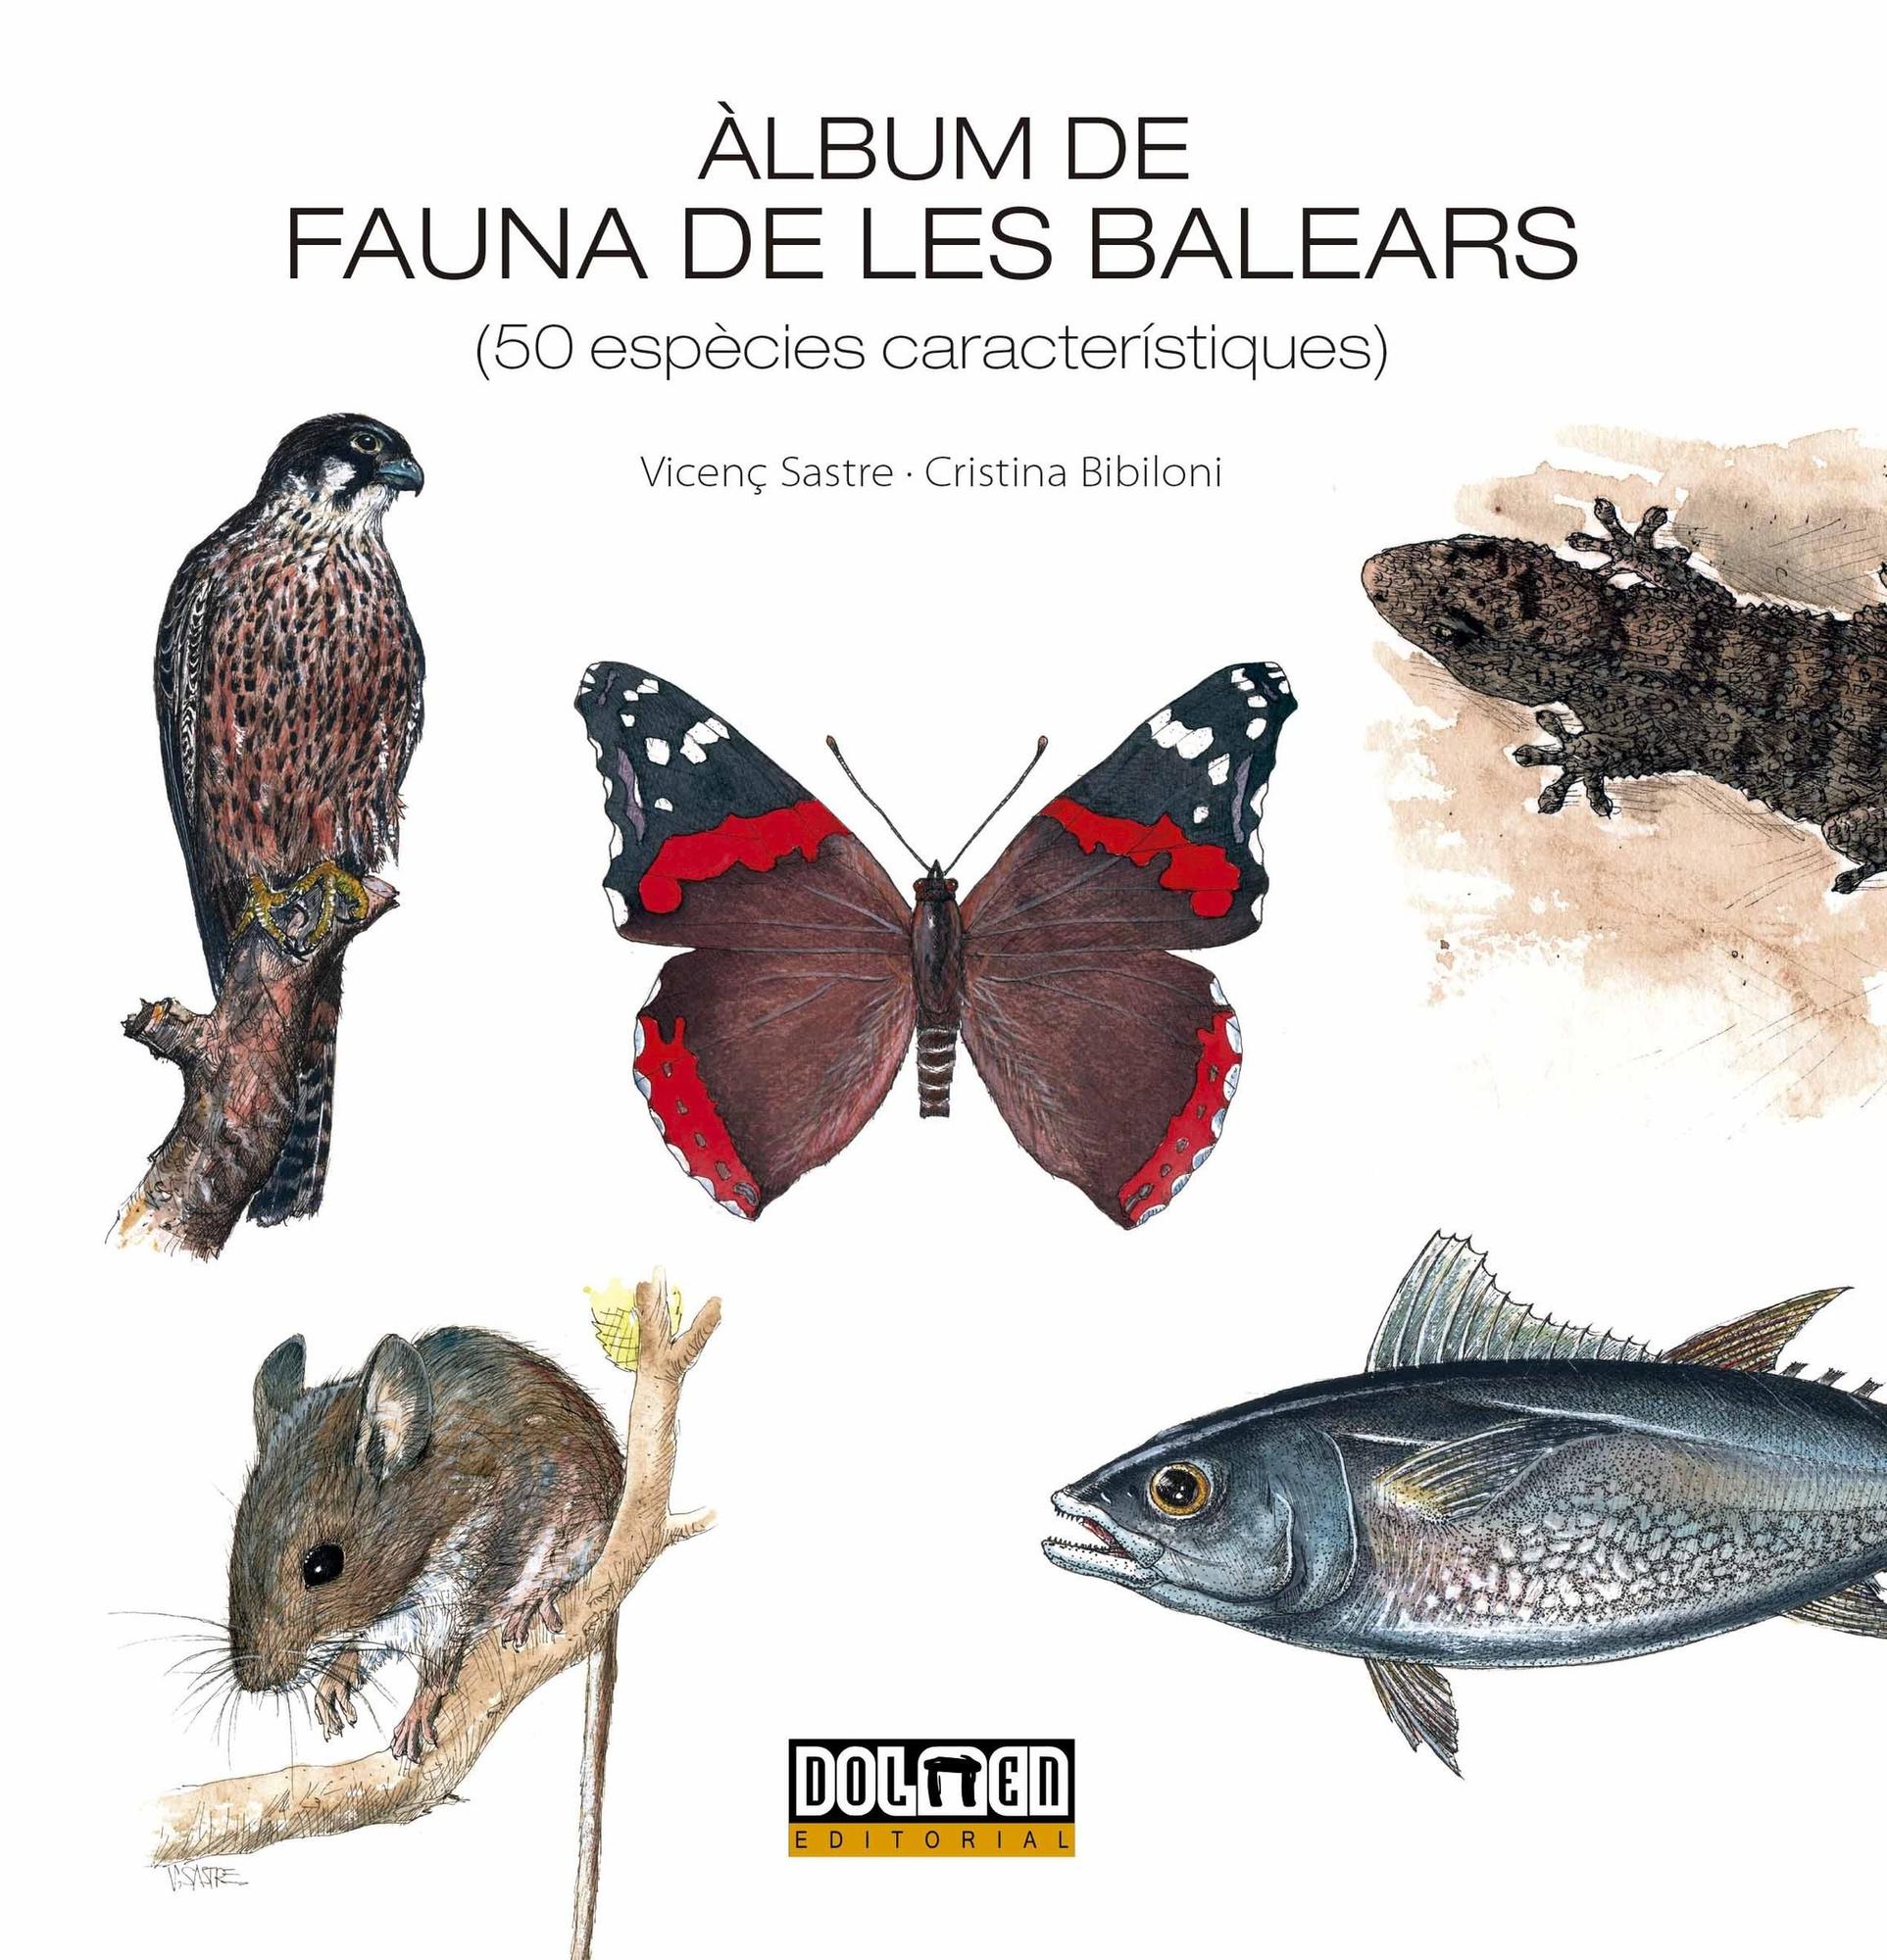 Das Cover des Albums über die Fauna von Mallorca.